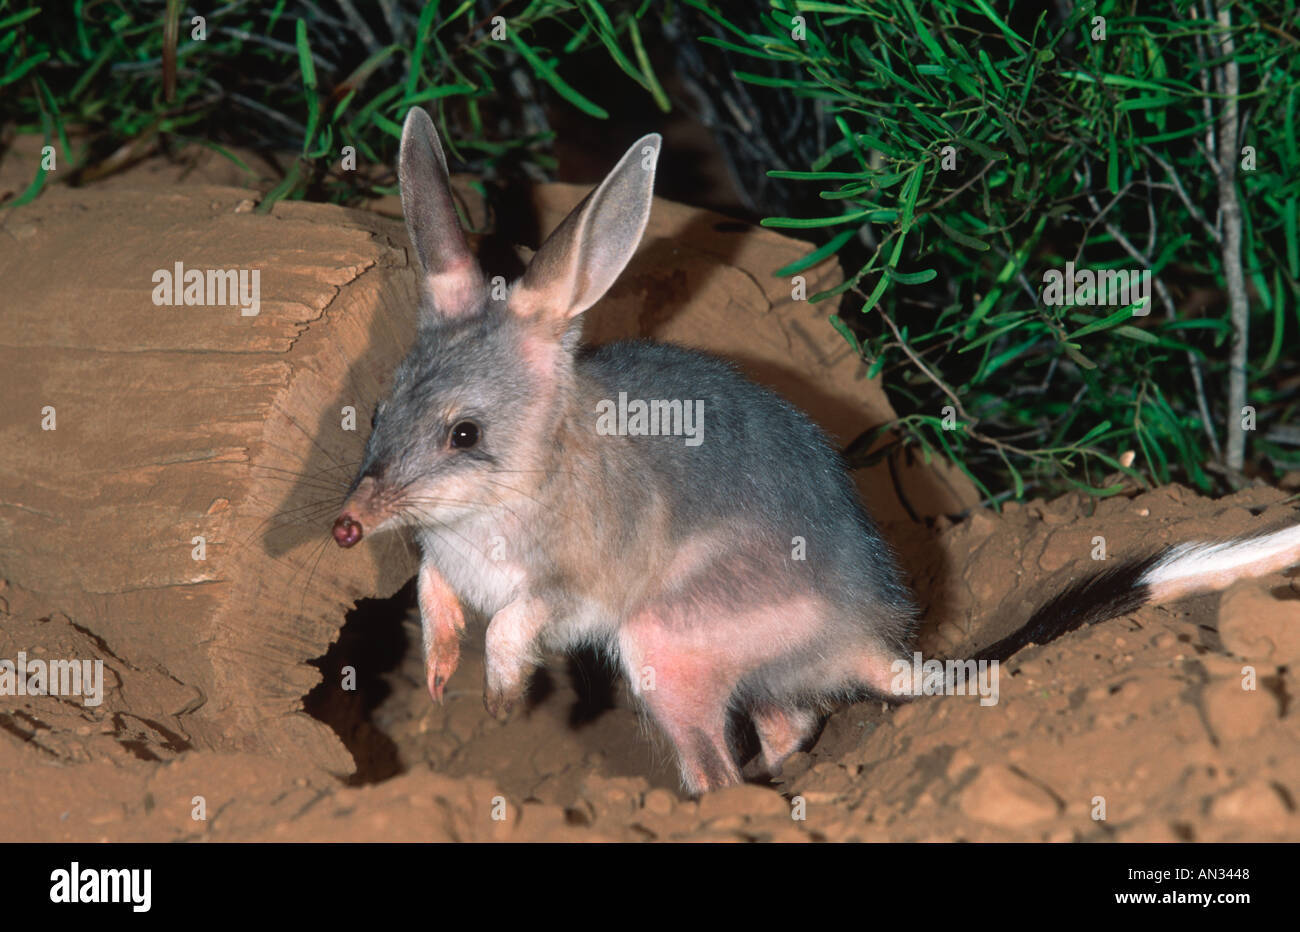 Bilby Macrotis lagotis Rabbit sized marsupial Endangered Australia Stock Photo